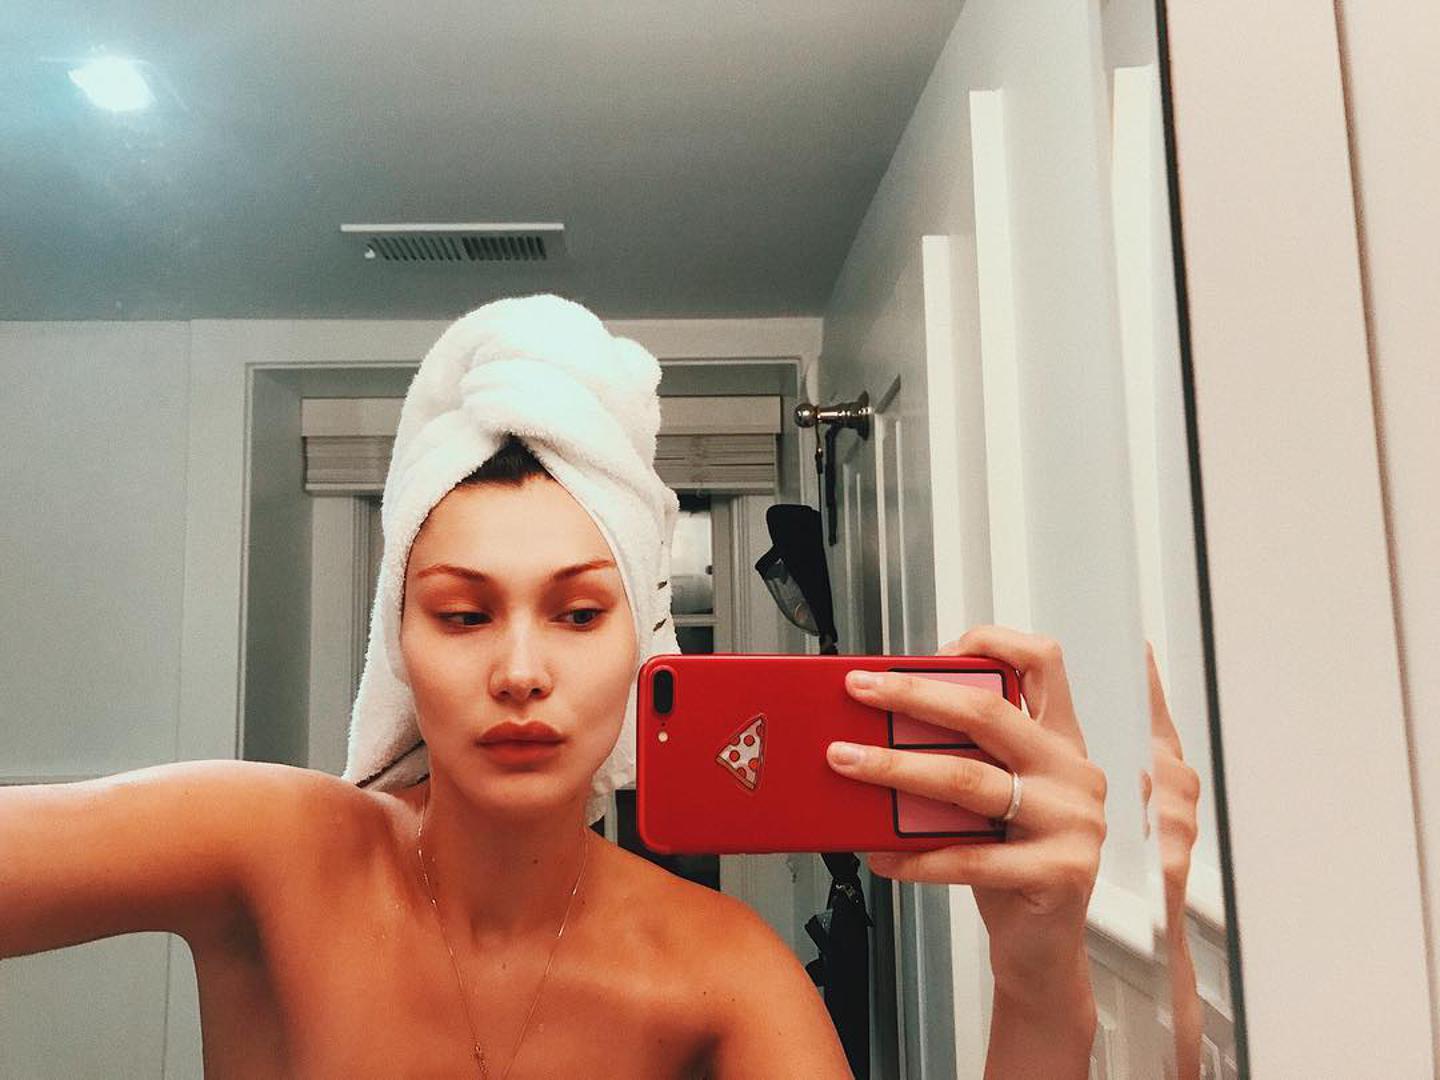 I manekenka Bella Hadid ima svoj selfie s ručnikom na glavi.